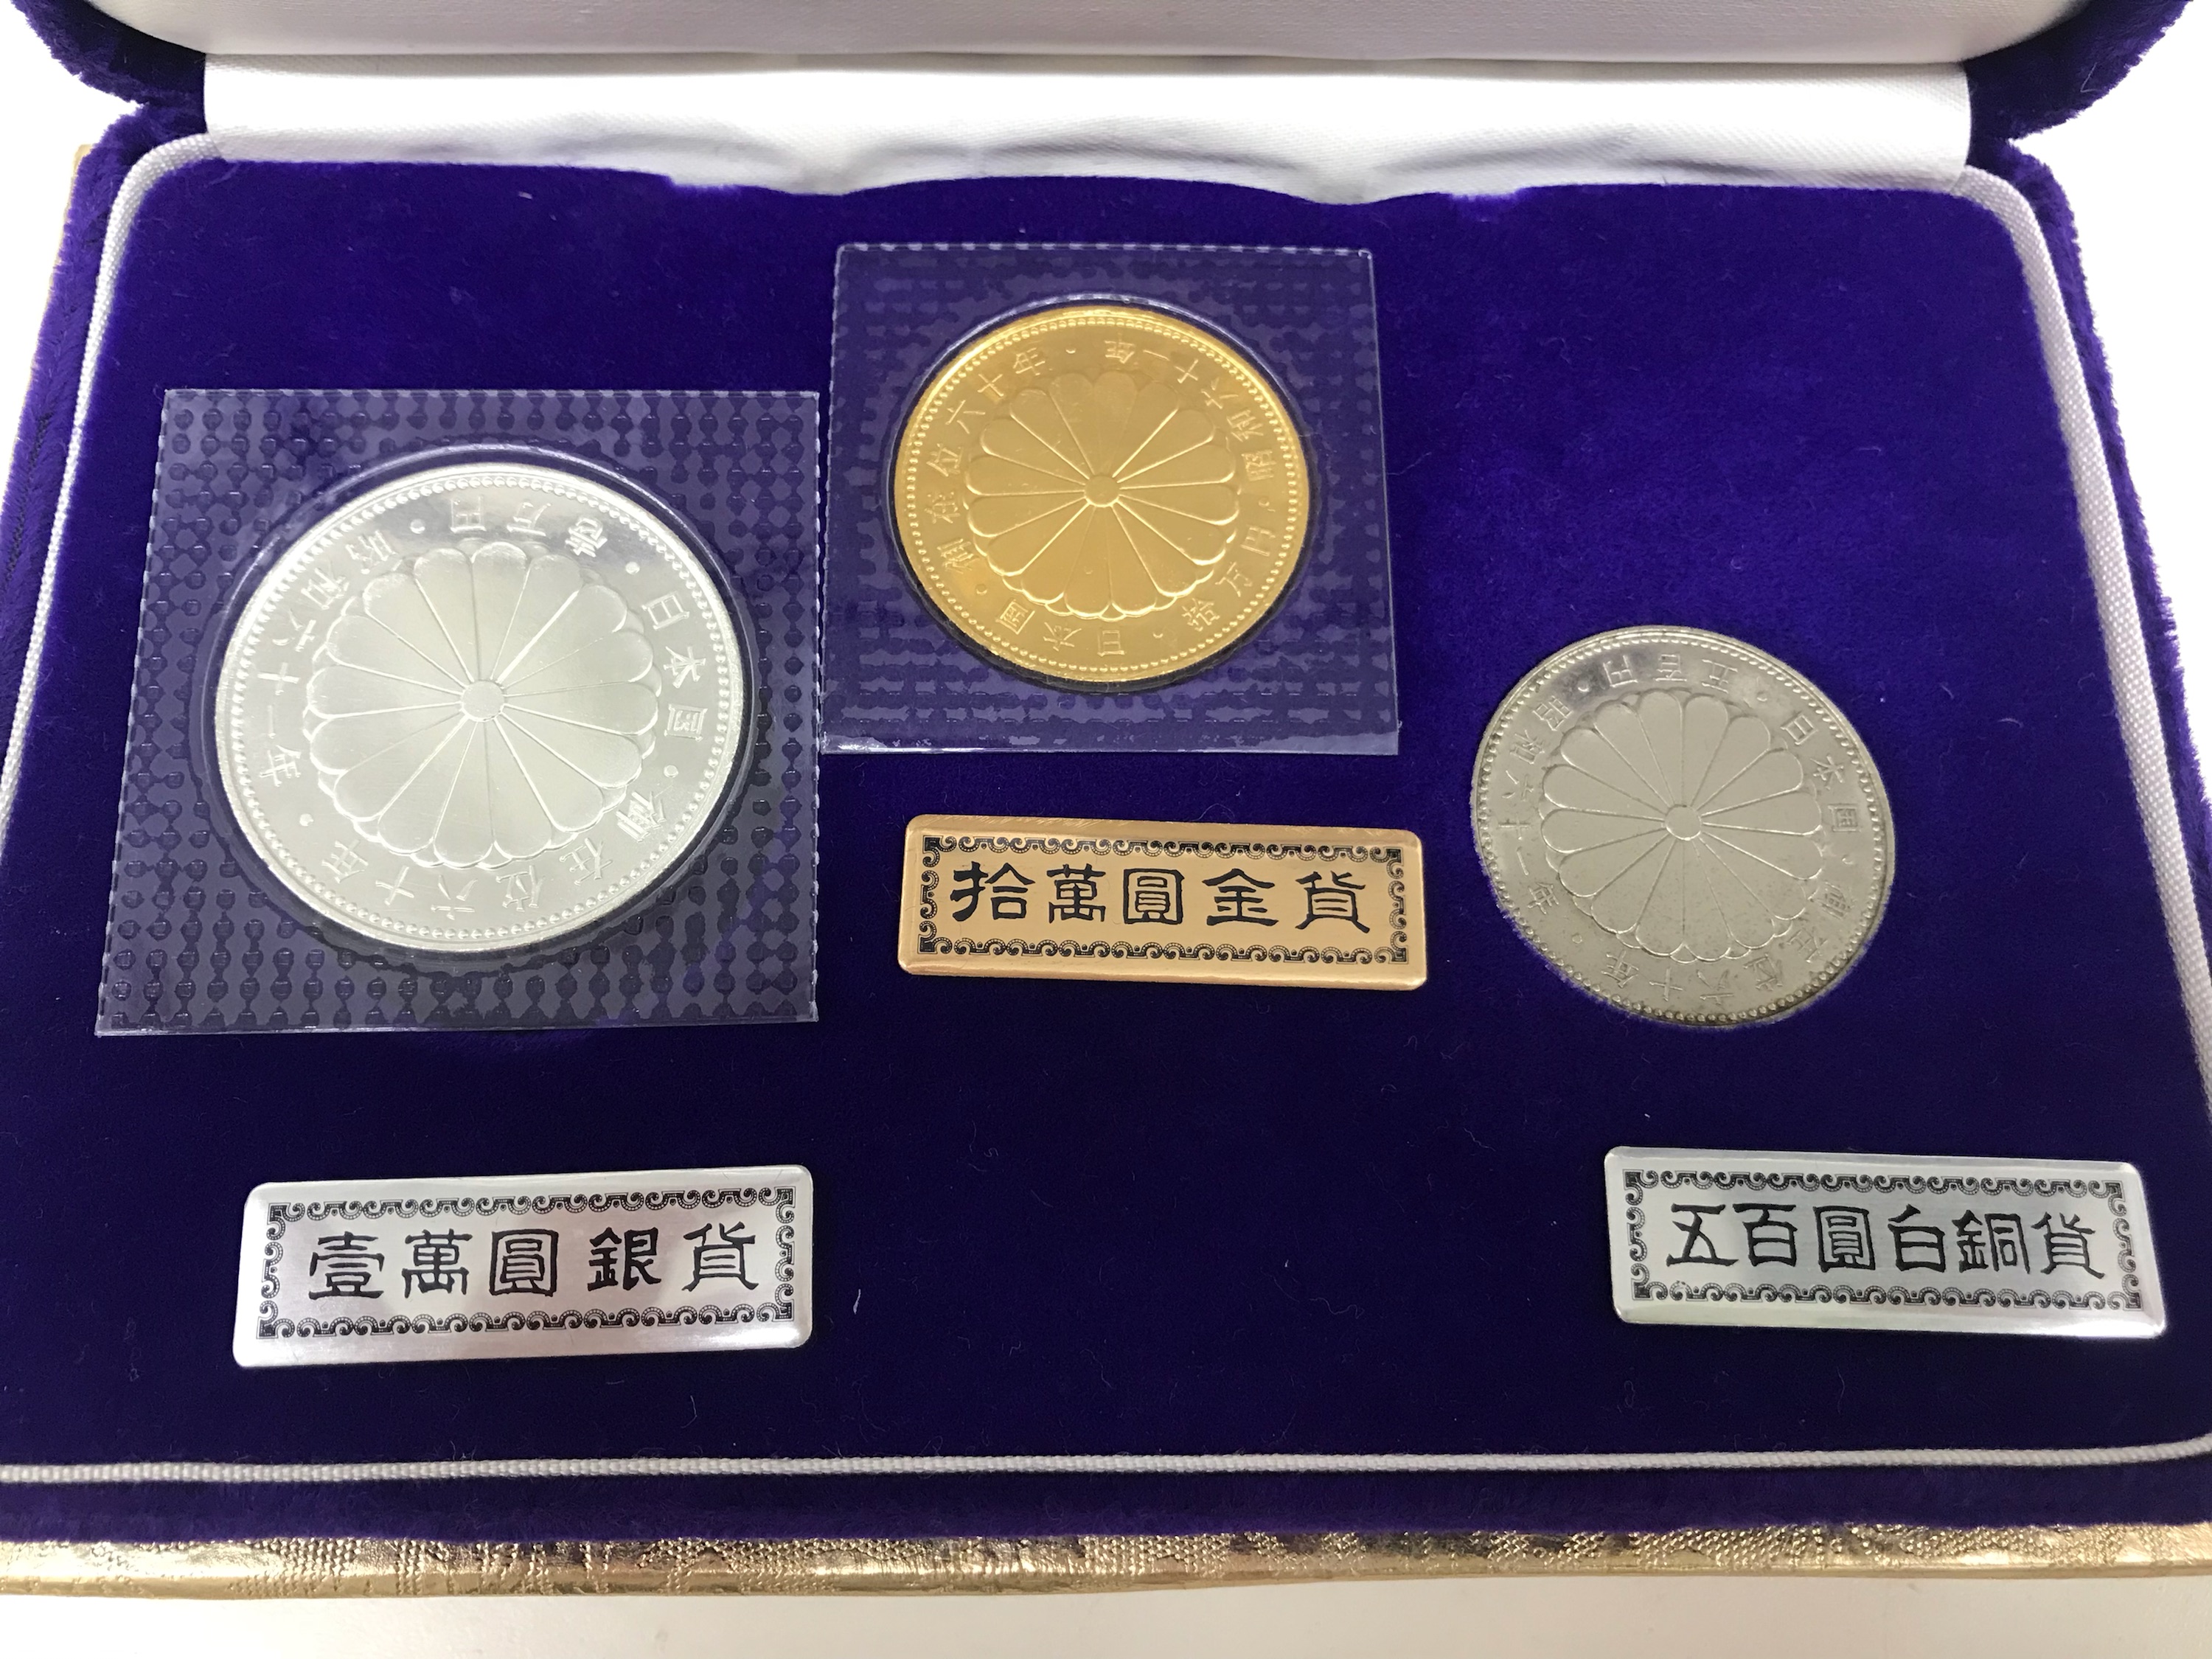 お気に入りの 昭和天皇陛下御在位60年記念プルーフ硬貨セット10万円 